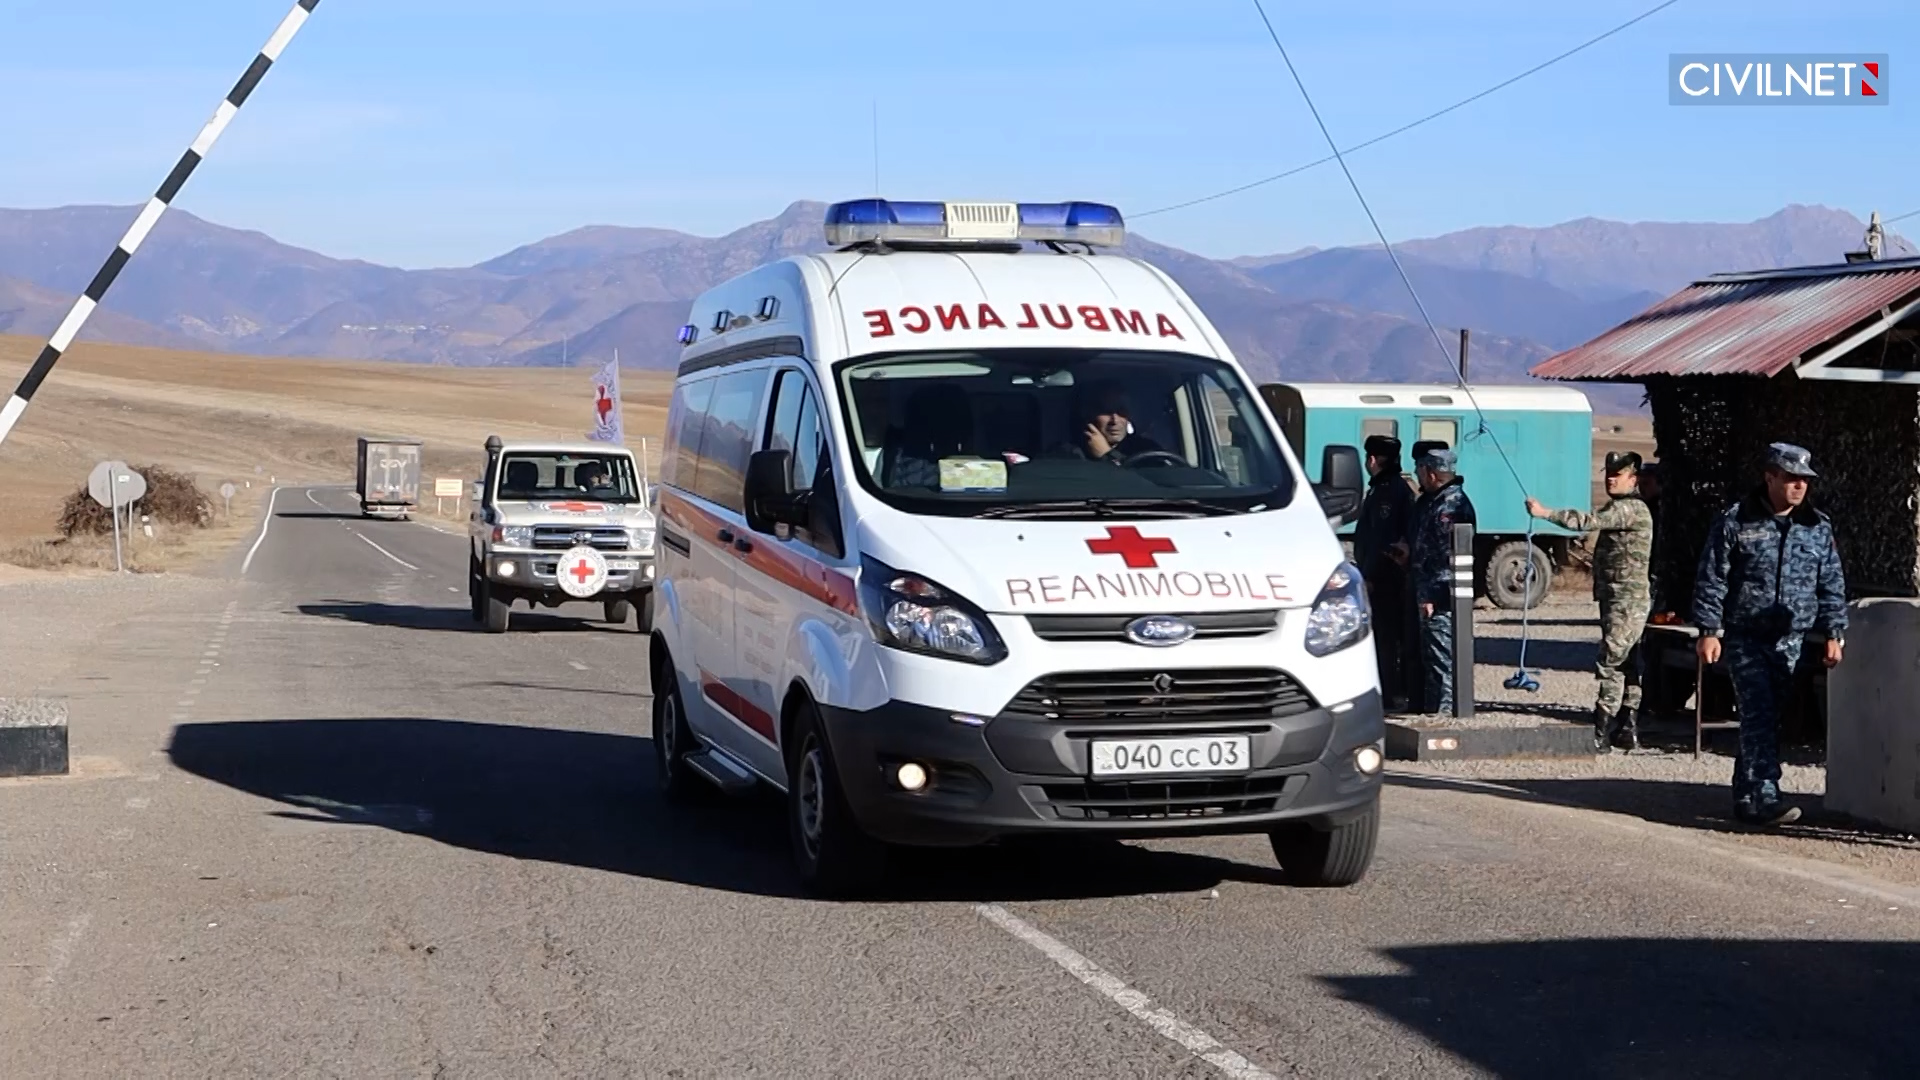 Ծանր վիճակում գտնվող 3 հիվանդ Արցախից տեղափոխվել է Հայաստան՝ Կարմիր Խաչի միջնորդությամբ